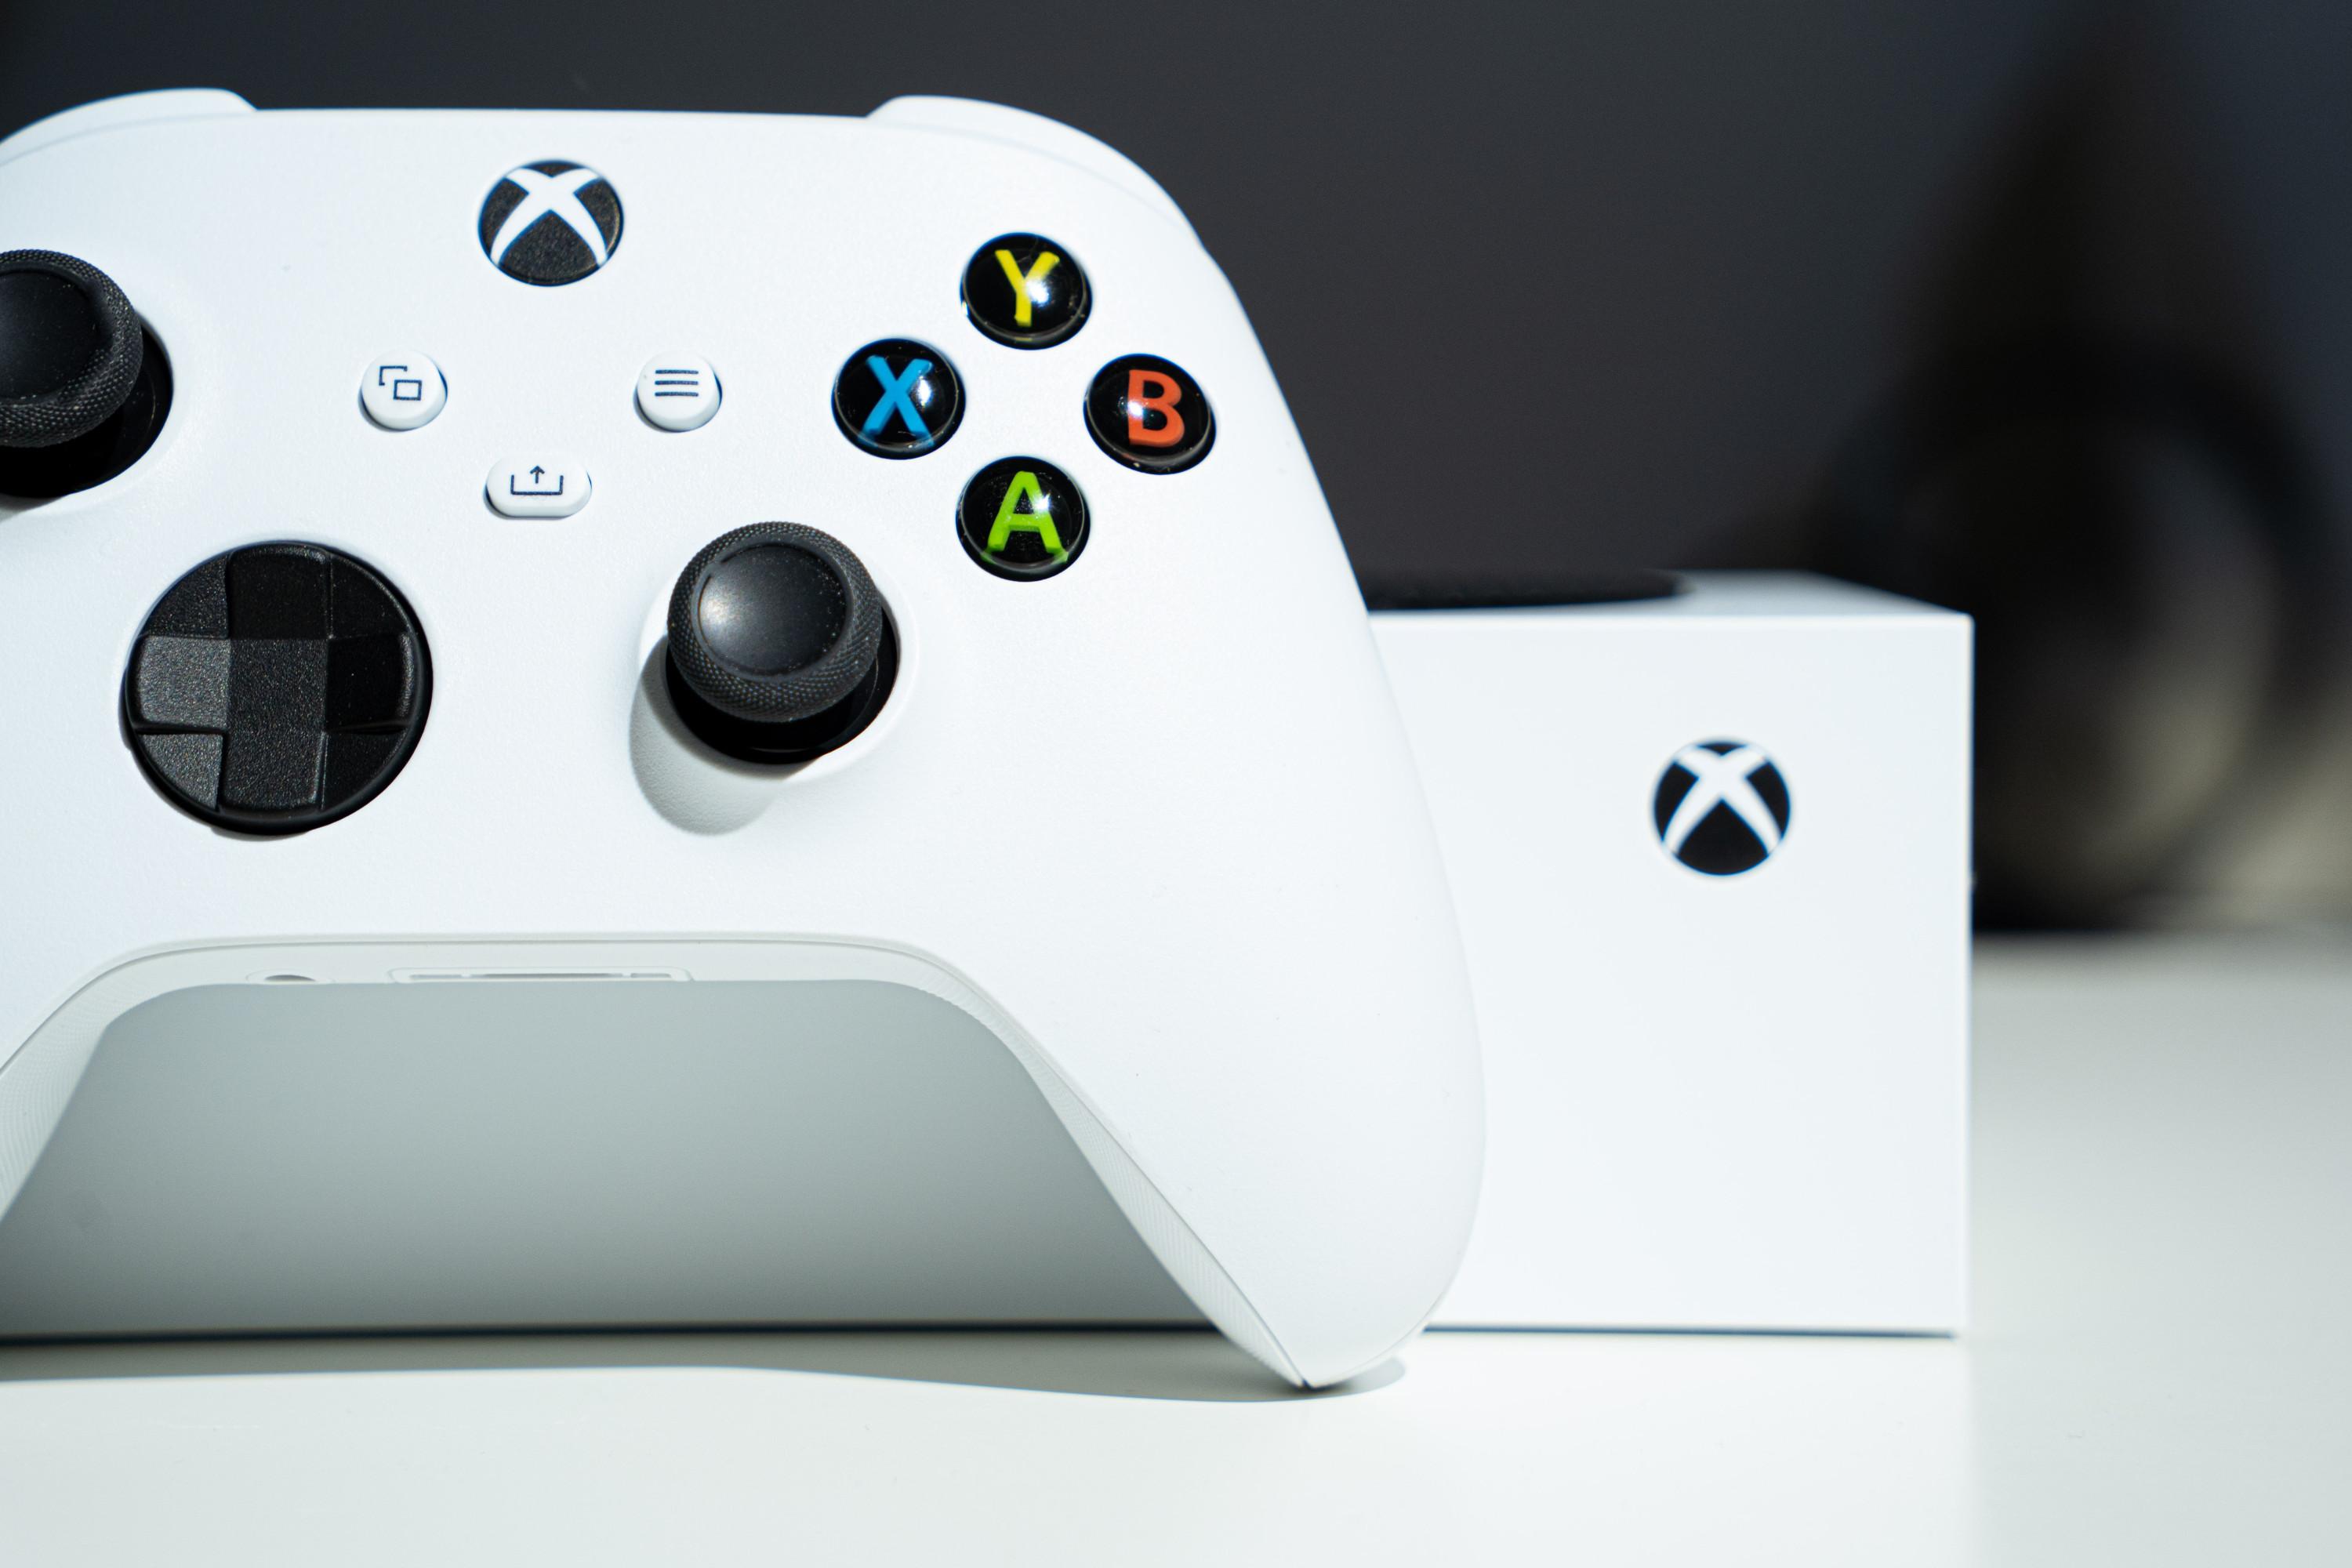 Nuevo mando de Xbox con controles hápticos y panel táctil, según un rumor